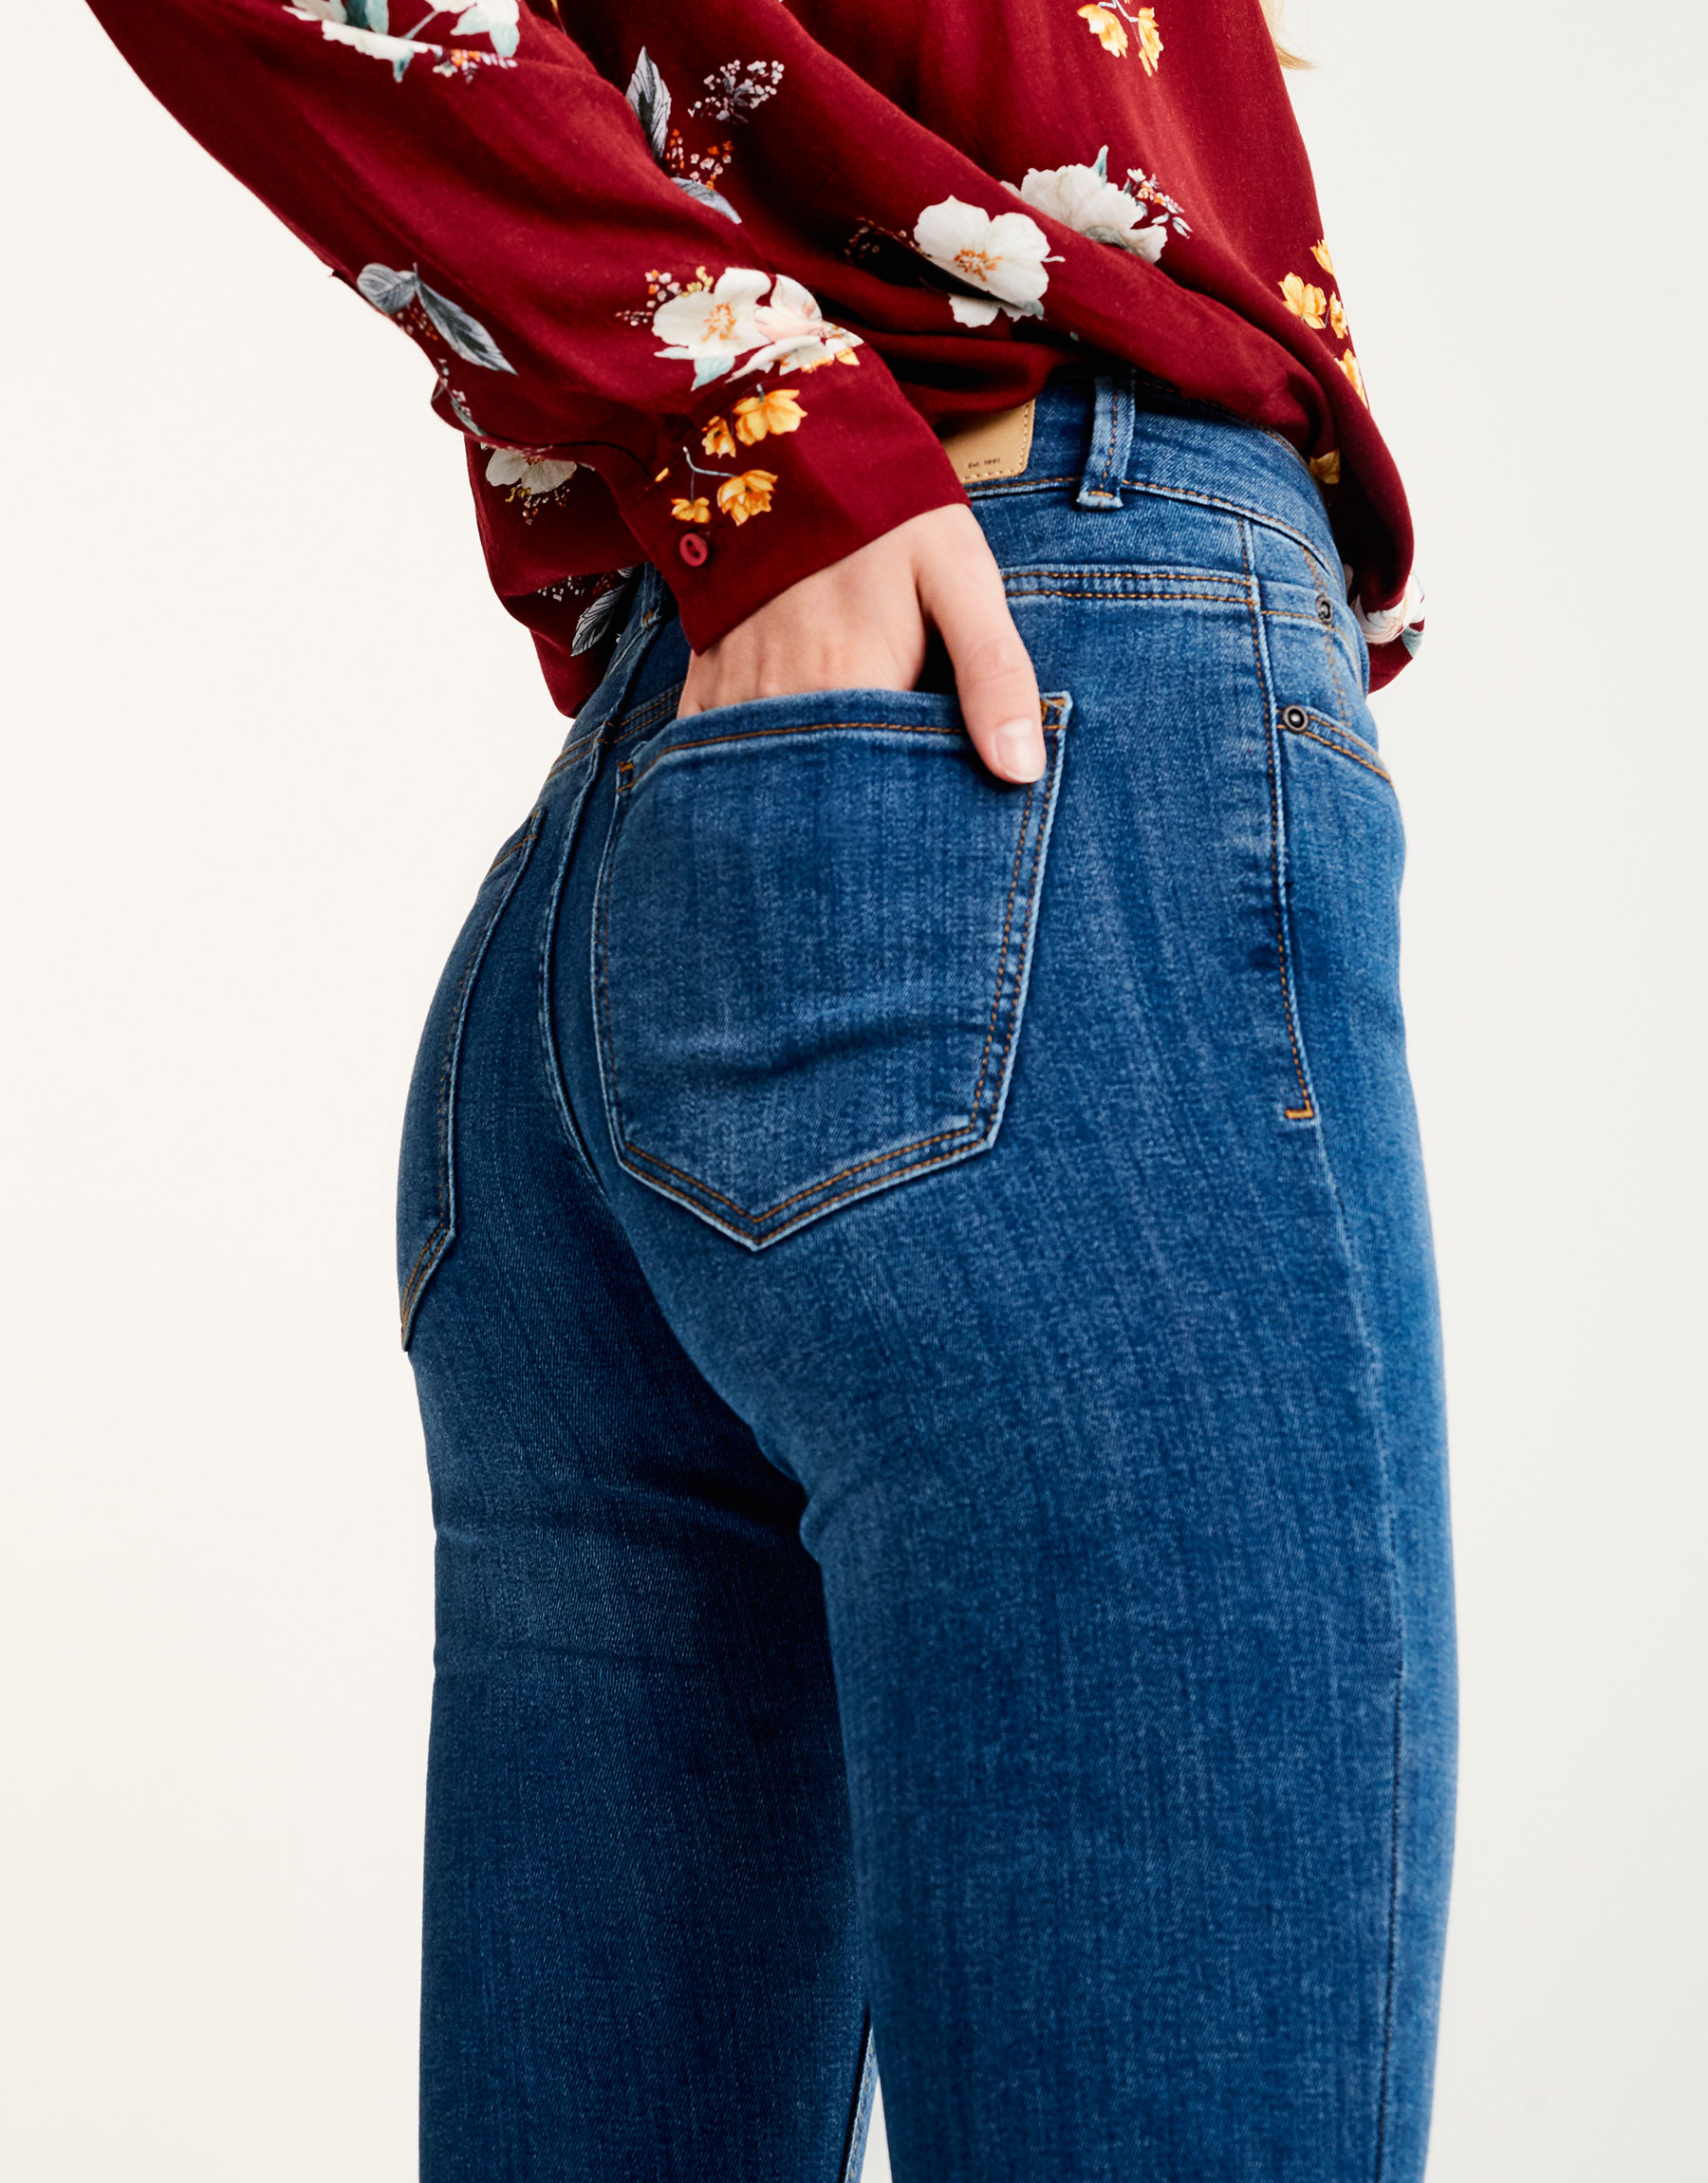 Women's Jeans for Spring/Summer 2017 | PULL&BEAR